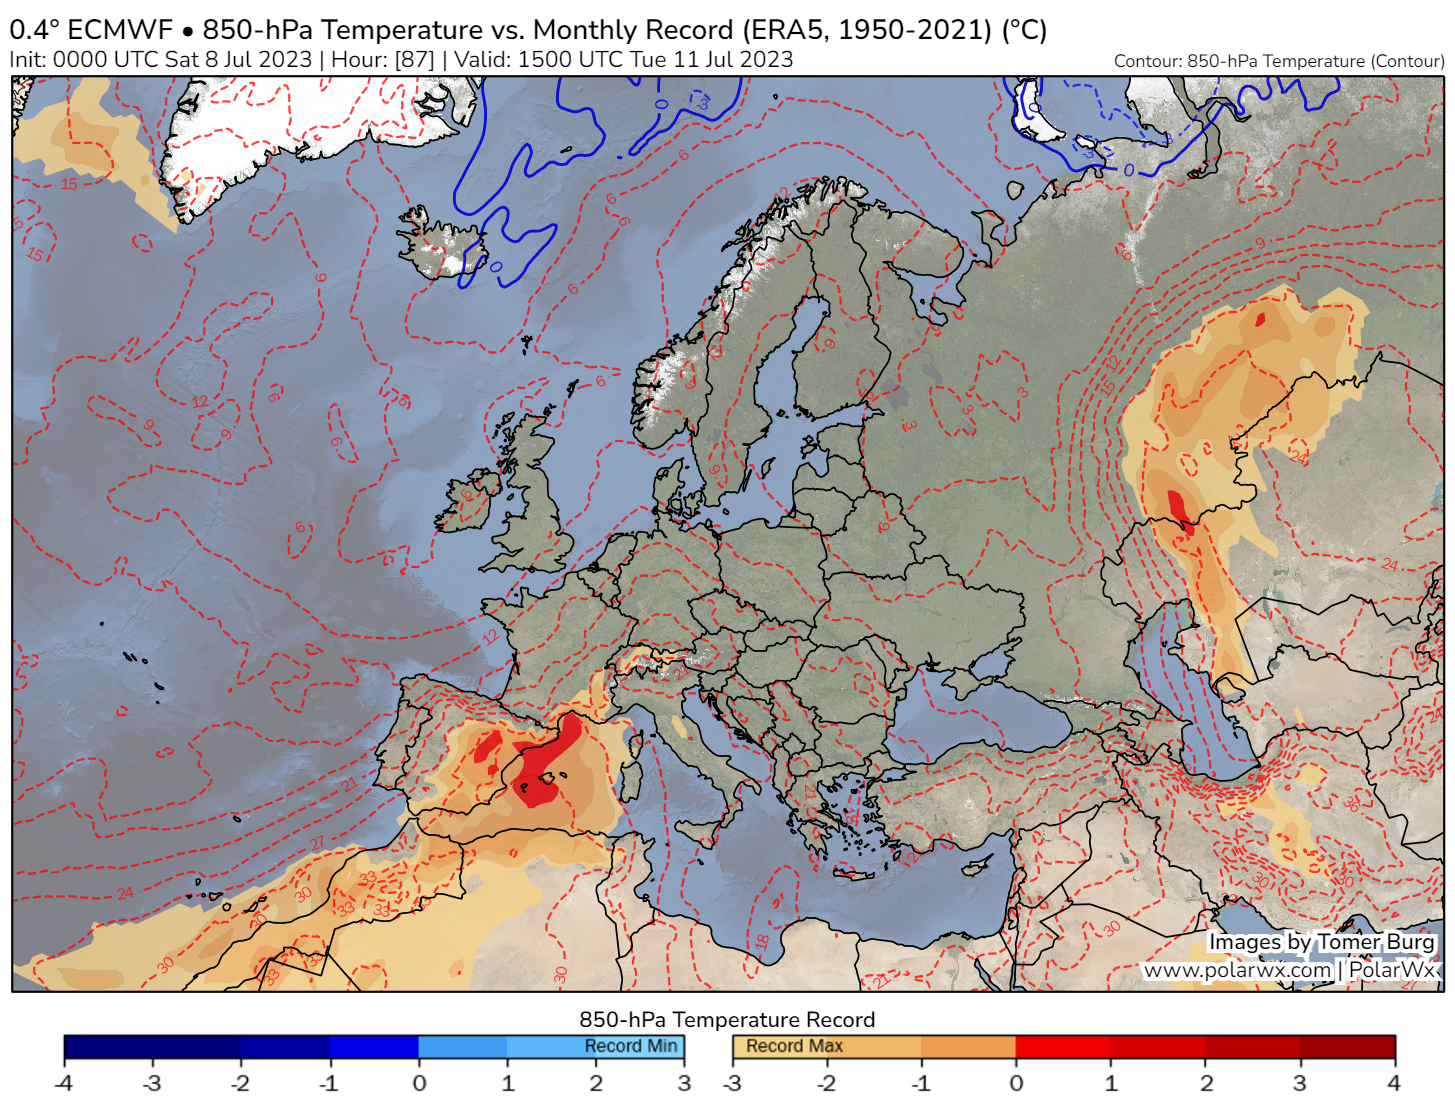 <p>Les valeurs de géopotentiels à 500 hPa prévues par le modèle européen devraient être au niveau des records mensuels (depuis 1950 - réanalyses ERA5). Il devrait en être de même au niveau de la température à 850 hPa (environ 1500 m) dans le Golfe du Lion mardi.</p>